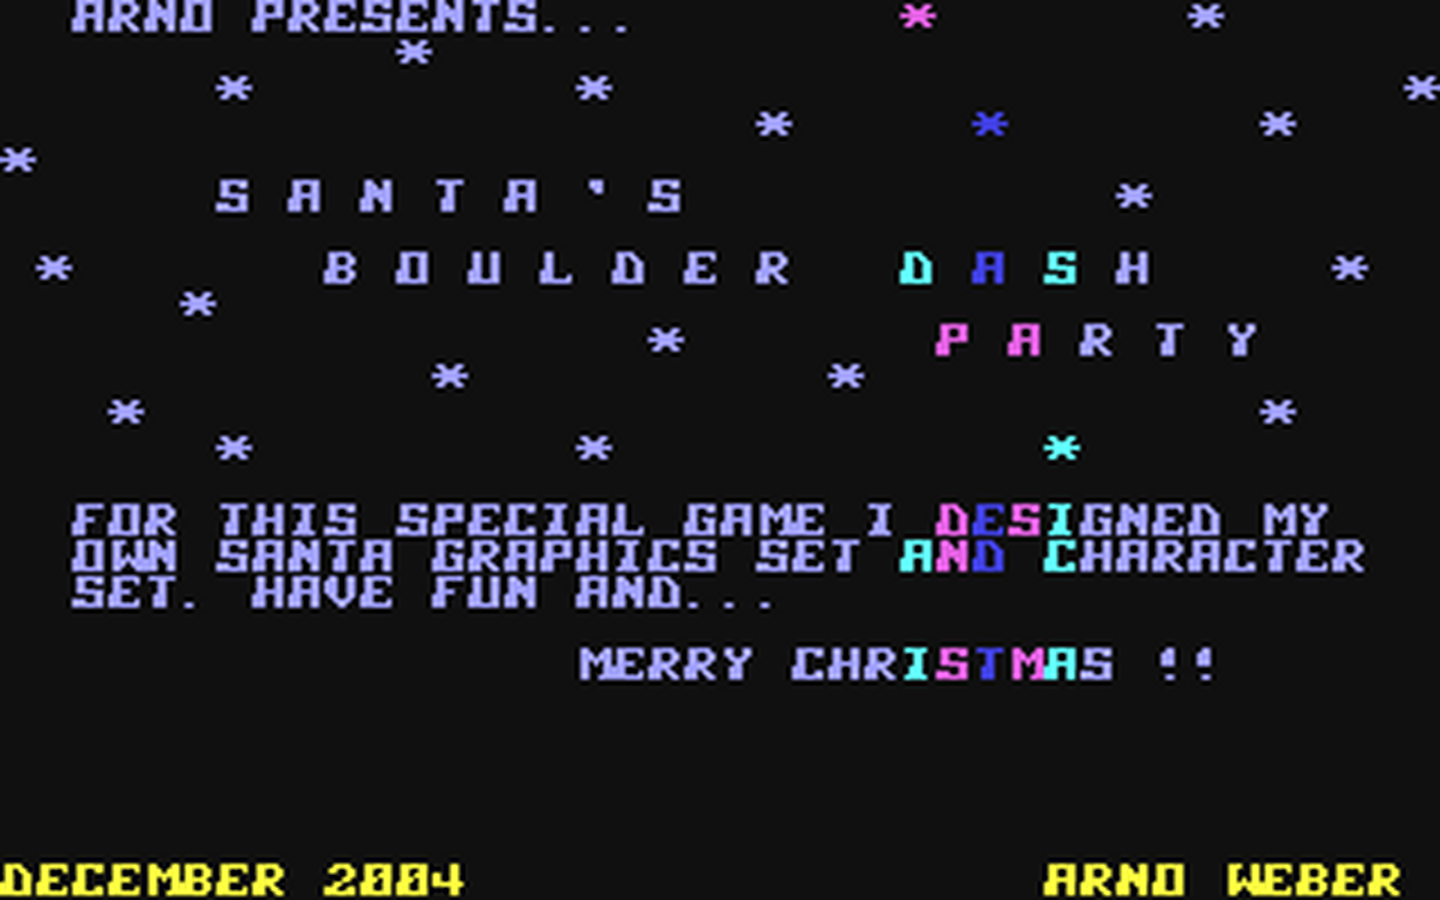 C64 GameBase Santa's_Boulder_Dash_Party (Not_Published) 2004